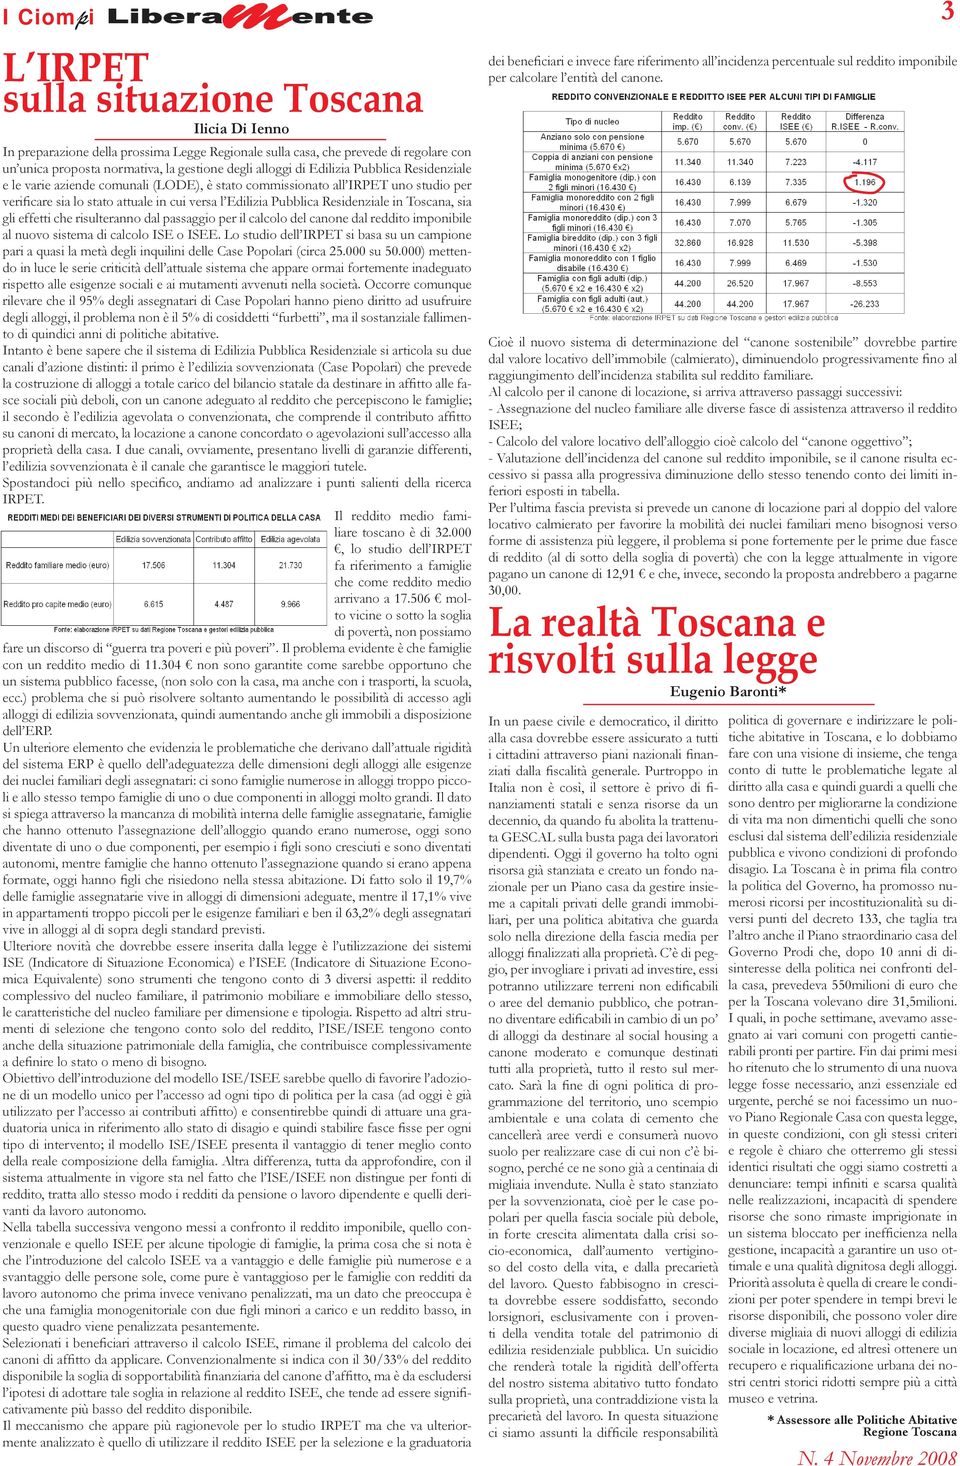 Toscana, sia gli effetti che risulteranno dal passaggio per il calcolo del canone dal reddito imponibile al nuovo sistema di calcolo ISE o ISEE.